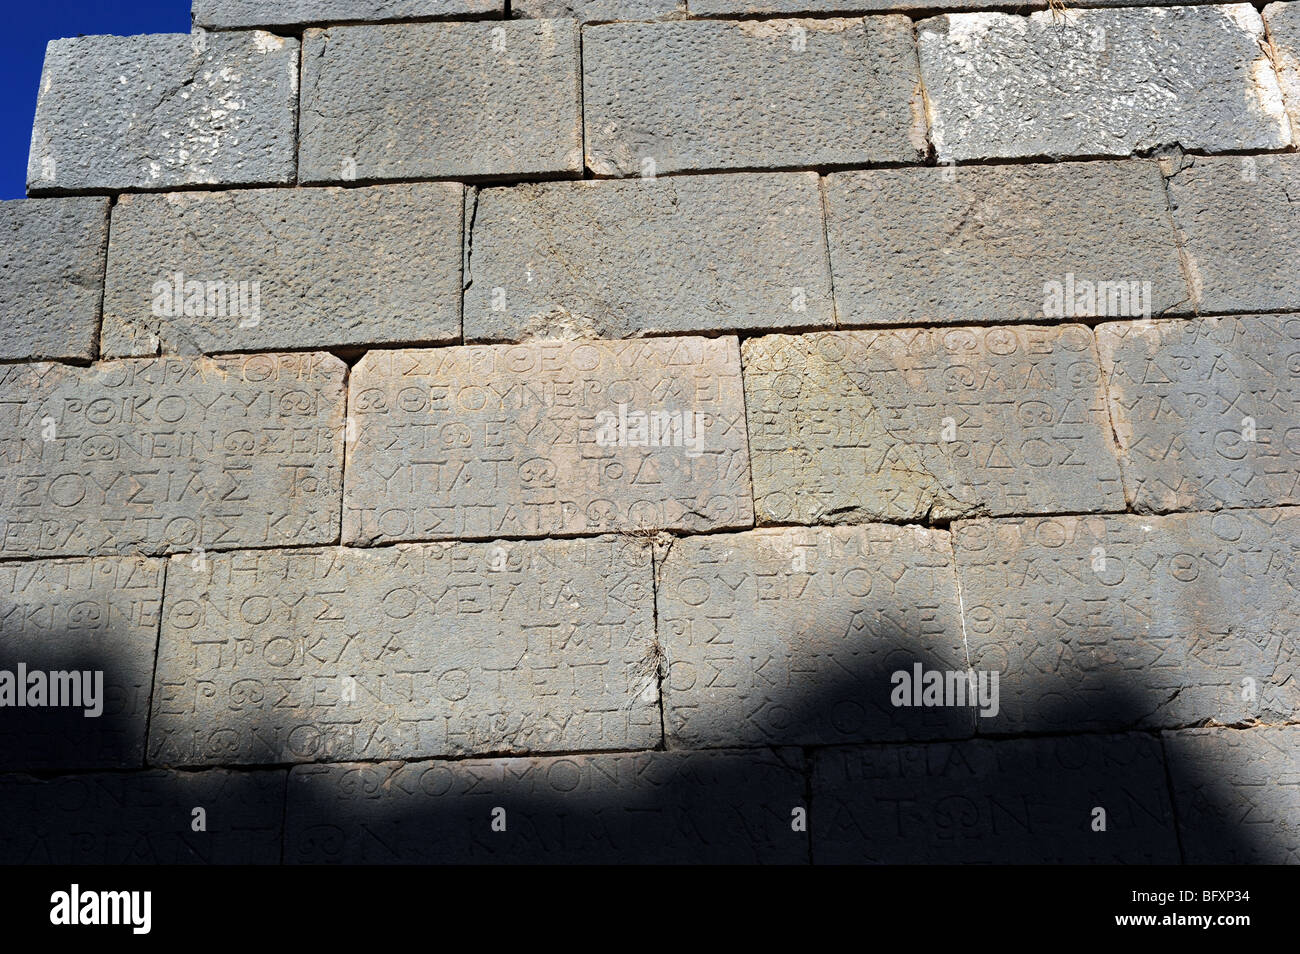 Scrittura antica incisa nella pietra nella città antica di Patara Foto Stock